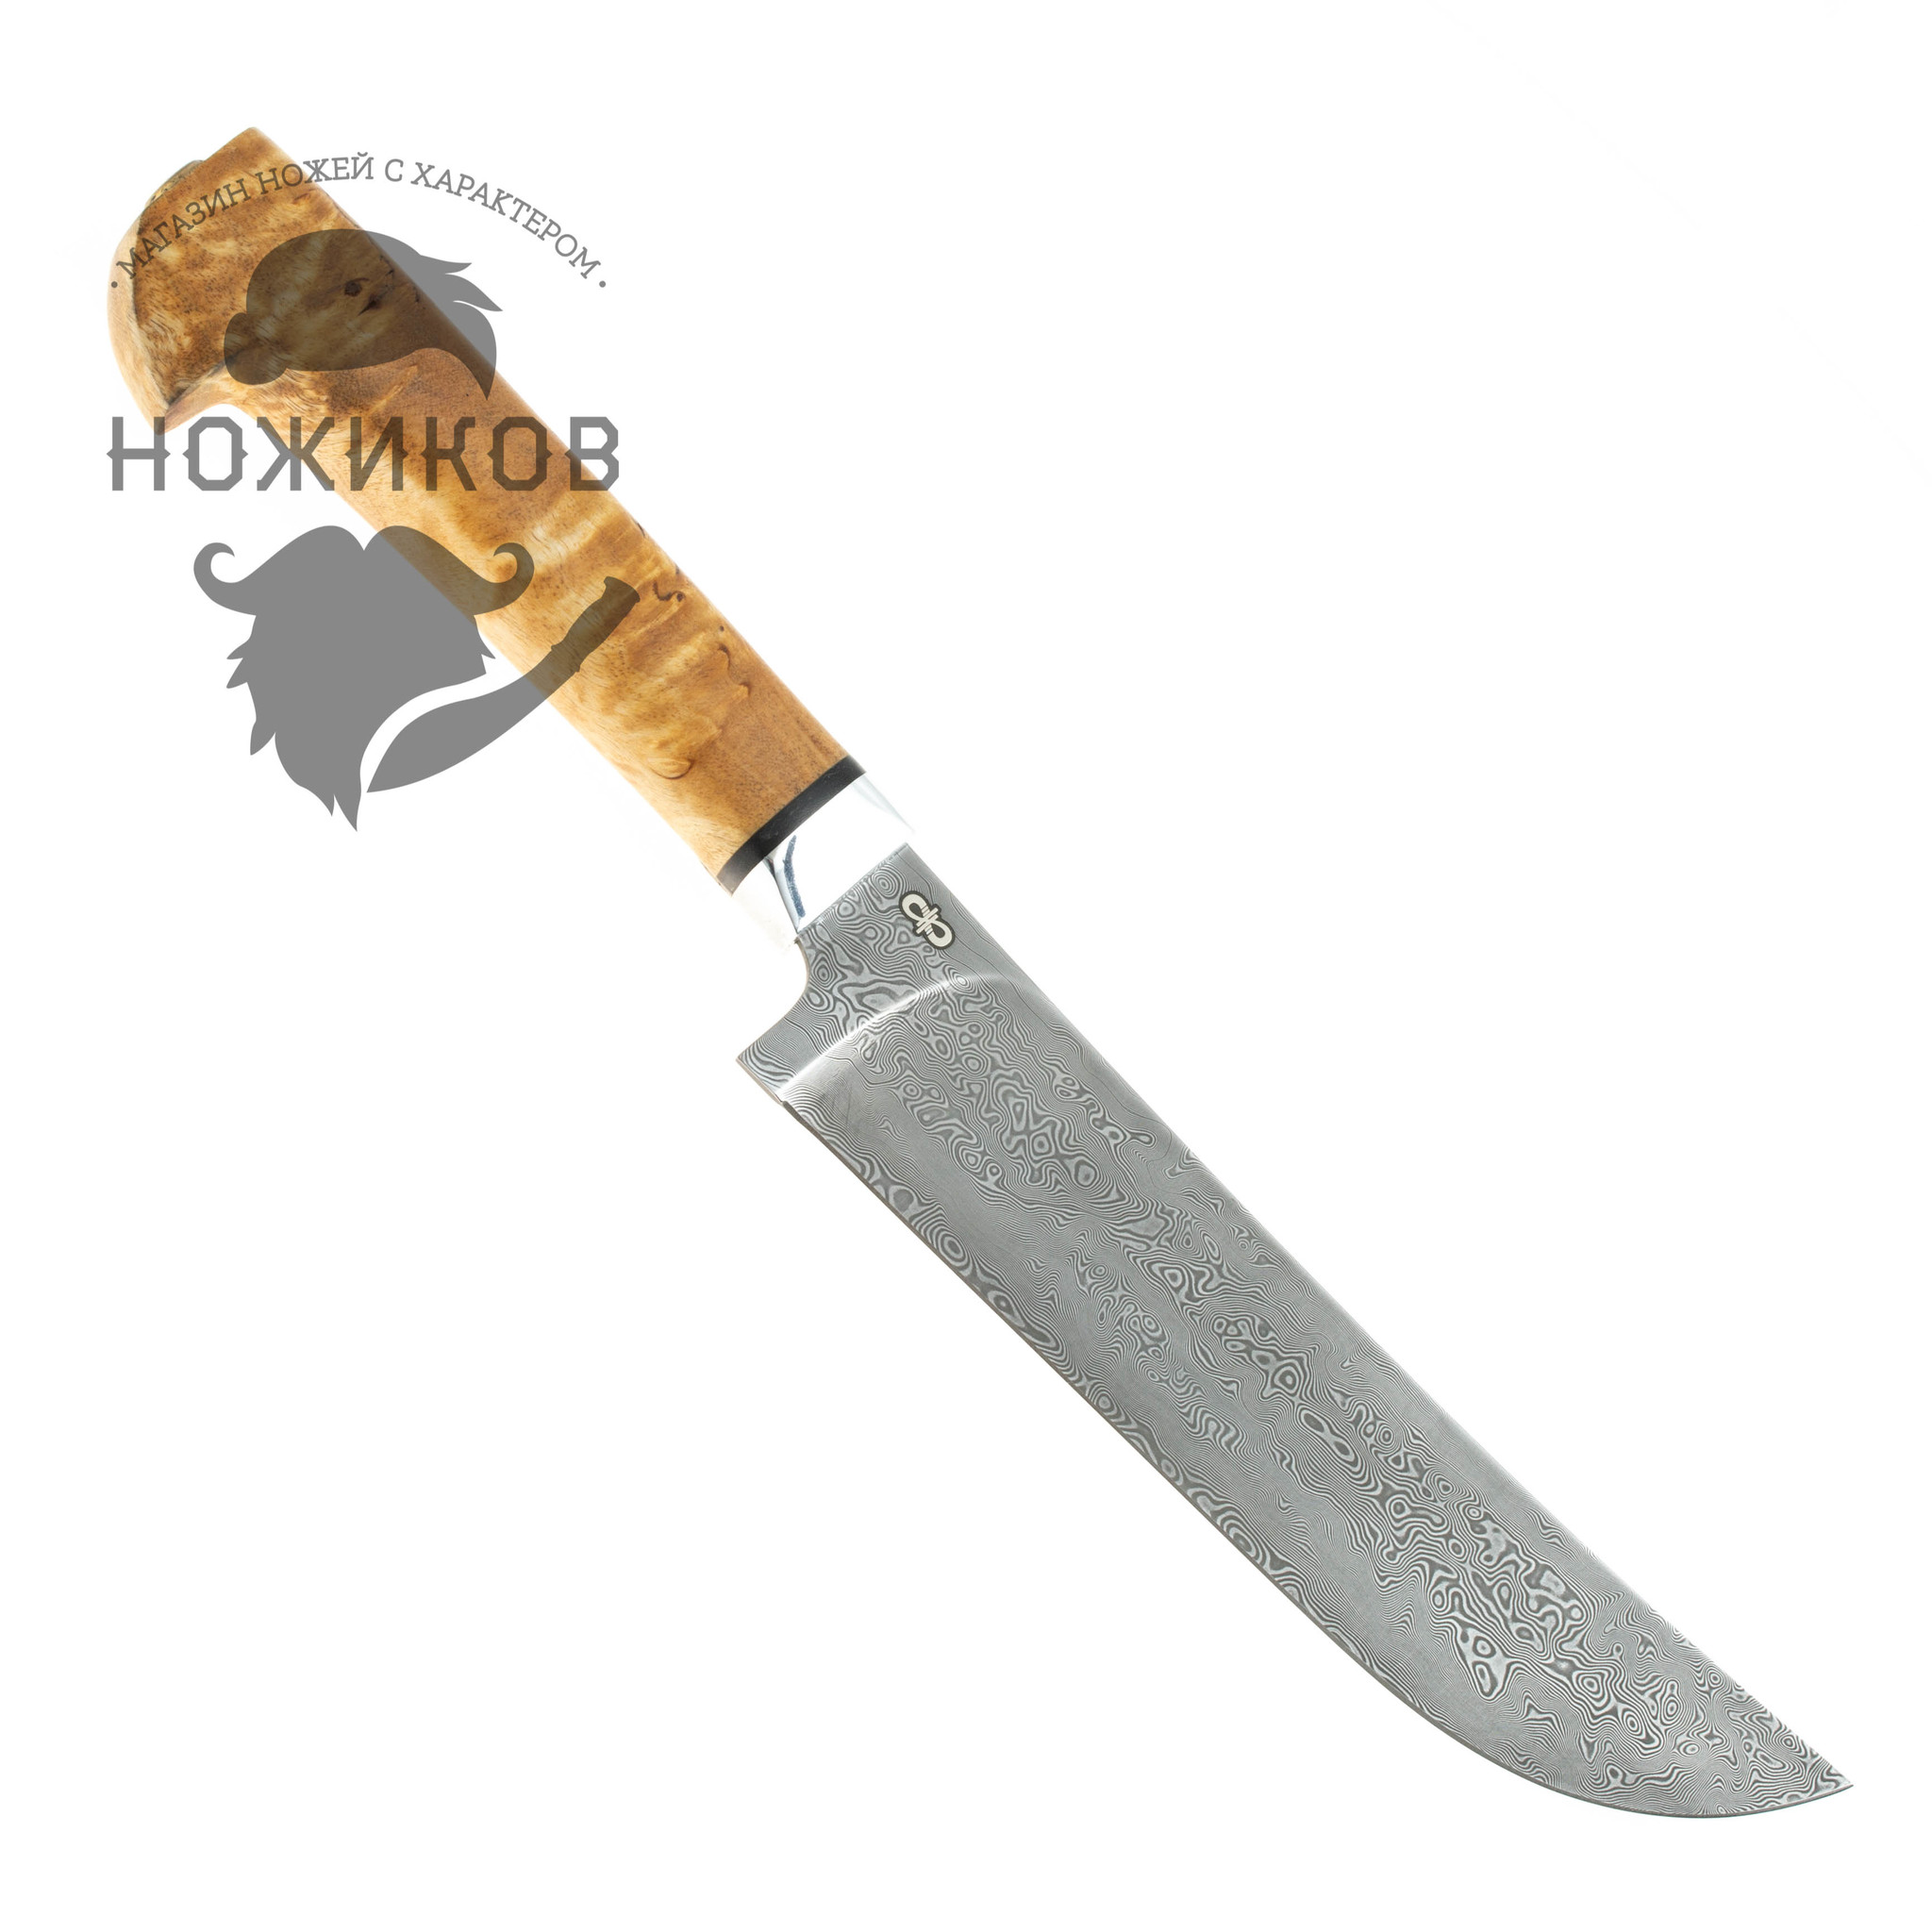 Нож разделочный Пчак, ZD 1016, рукоять карельская береза, АиР - фото 5